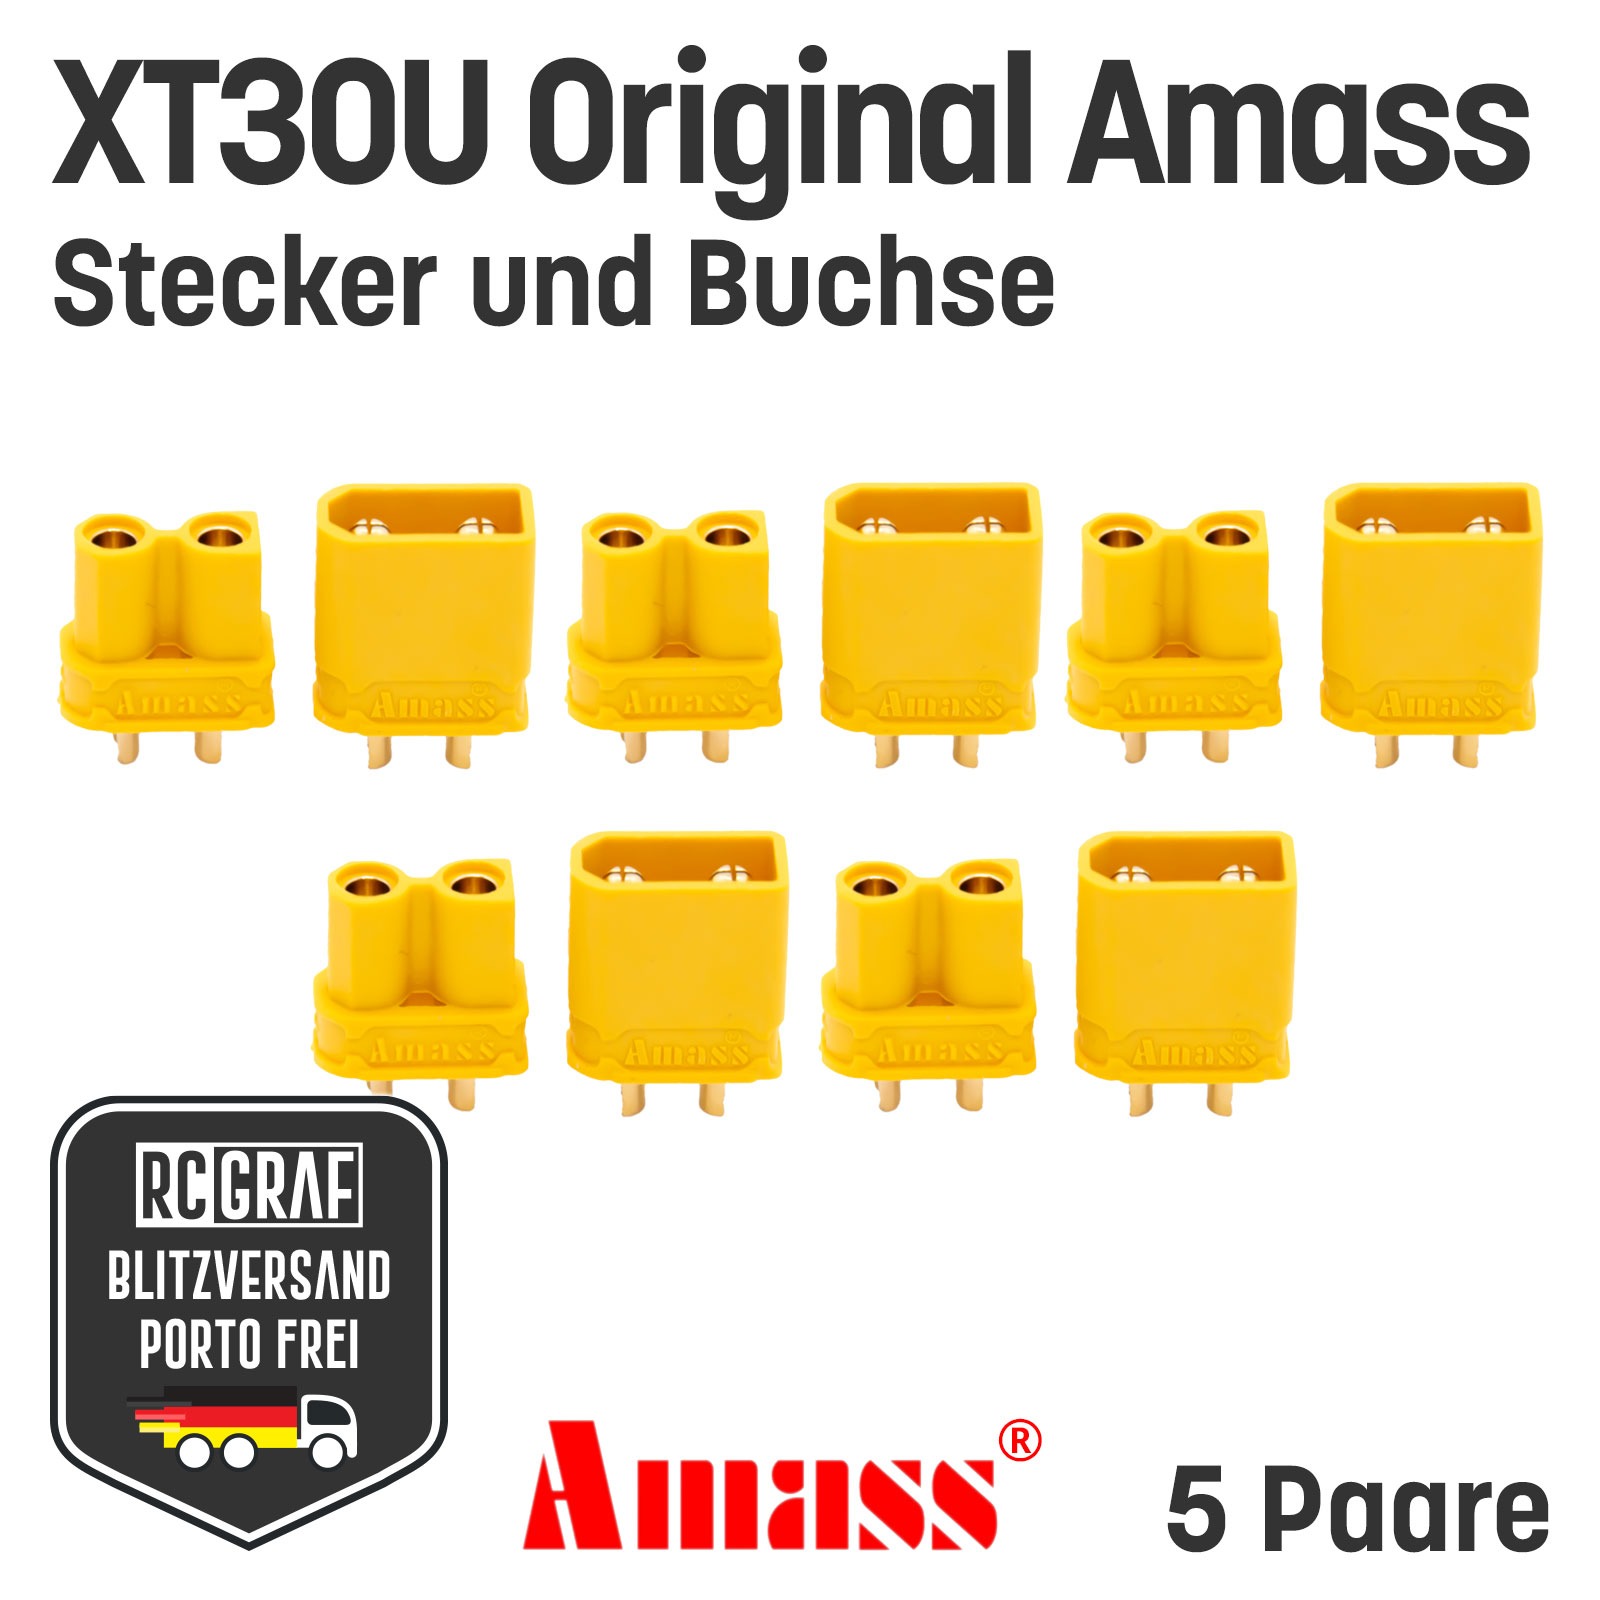 5 Paare XT30U Original Amass